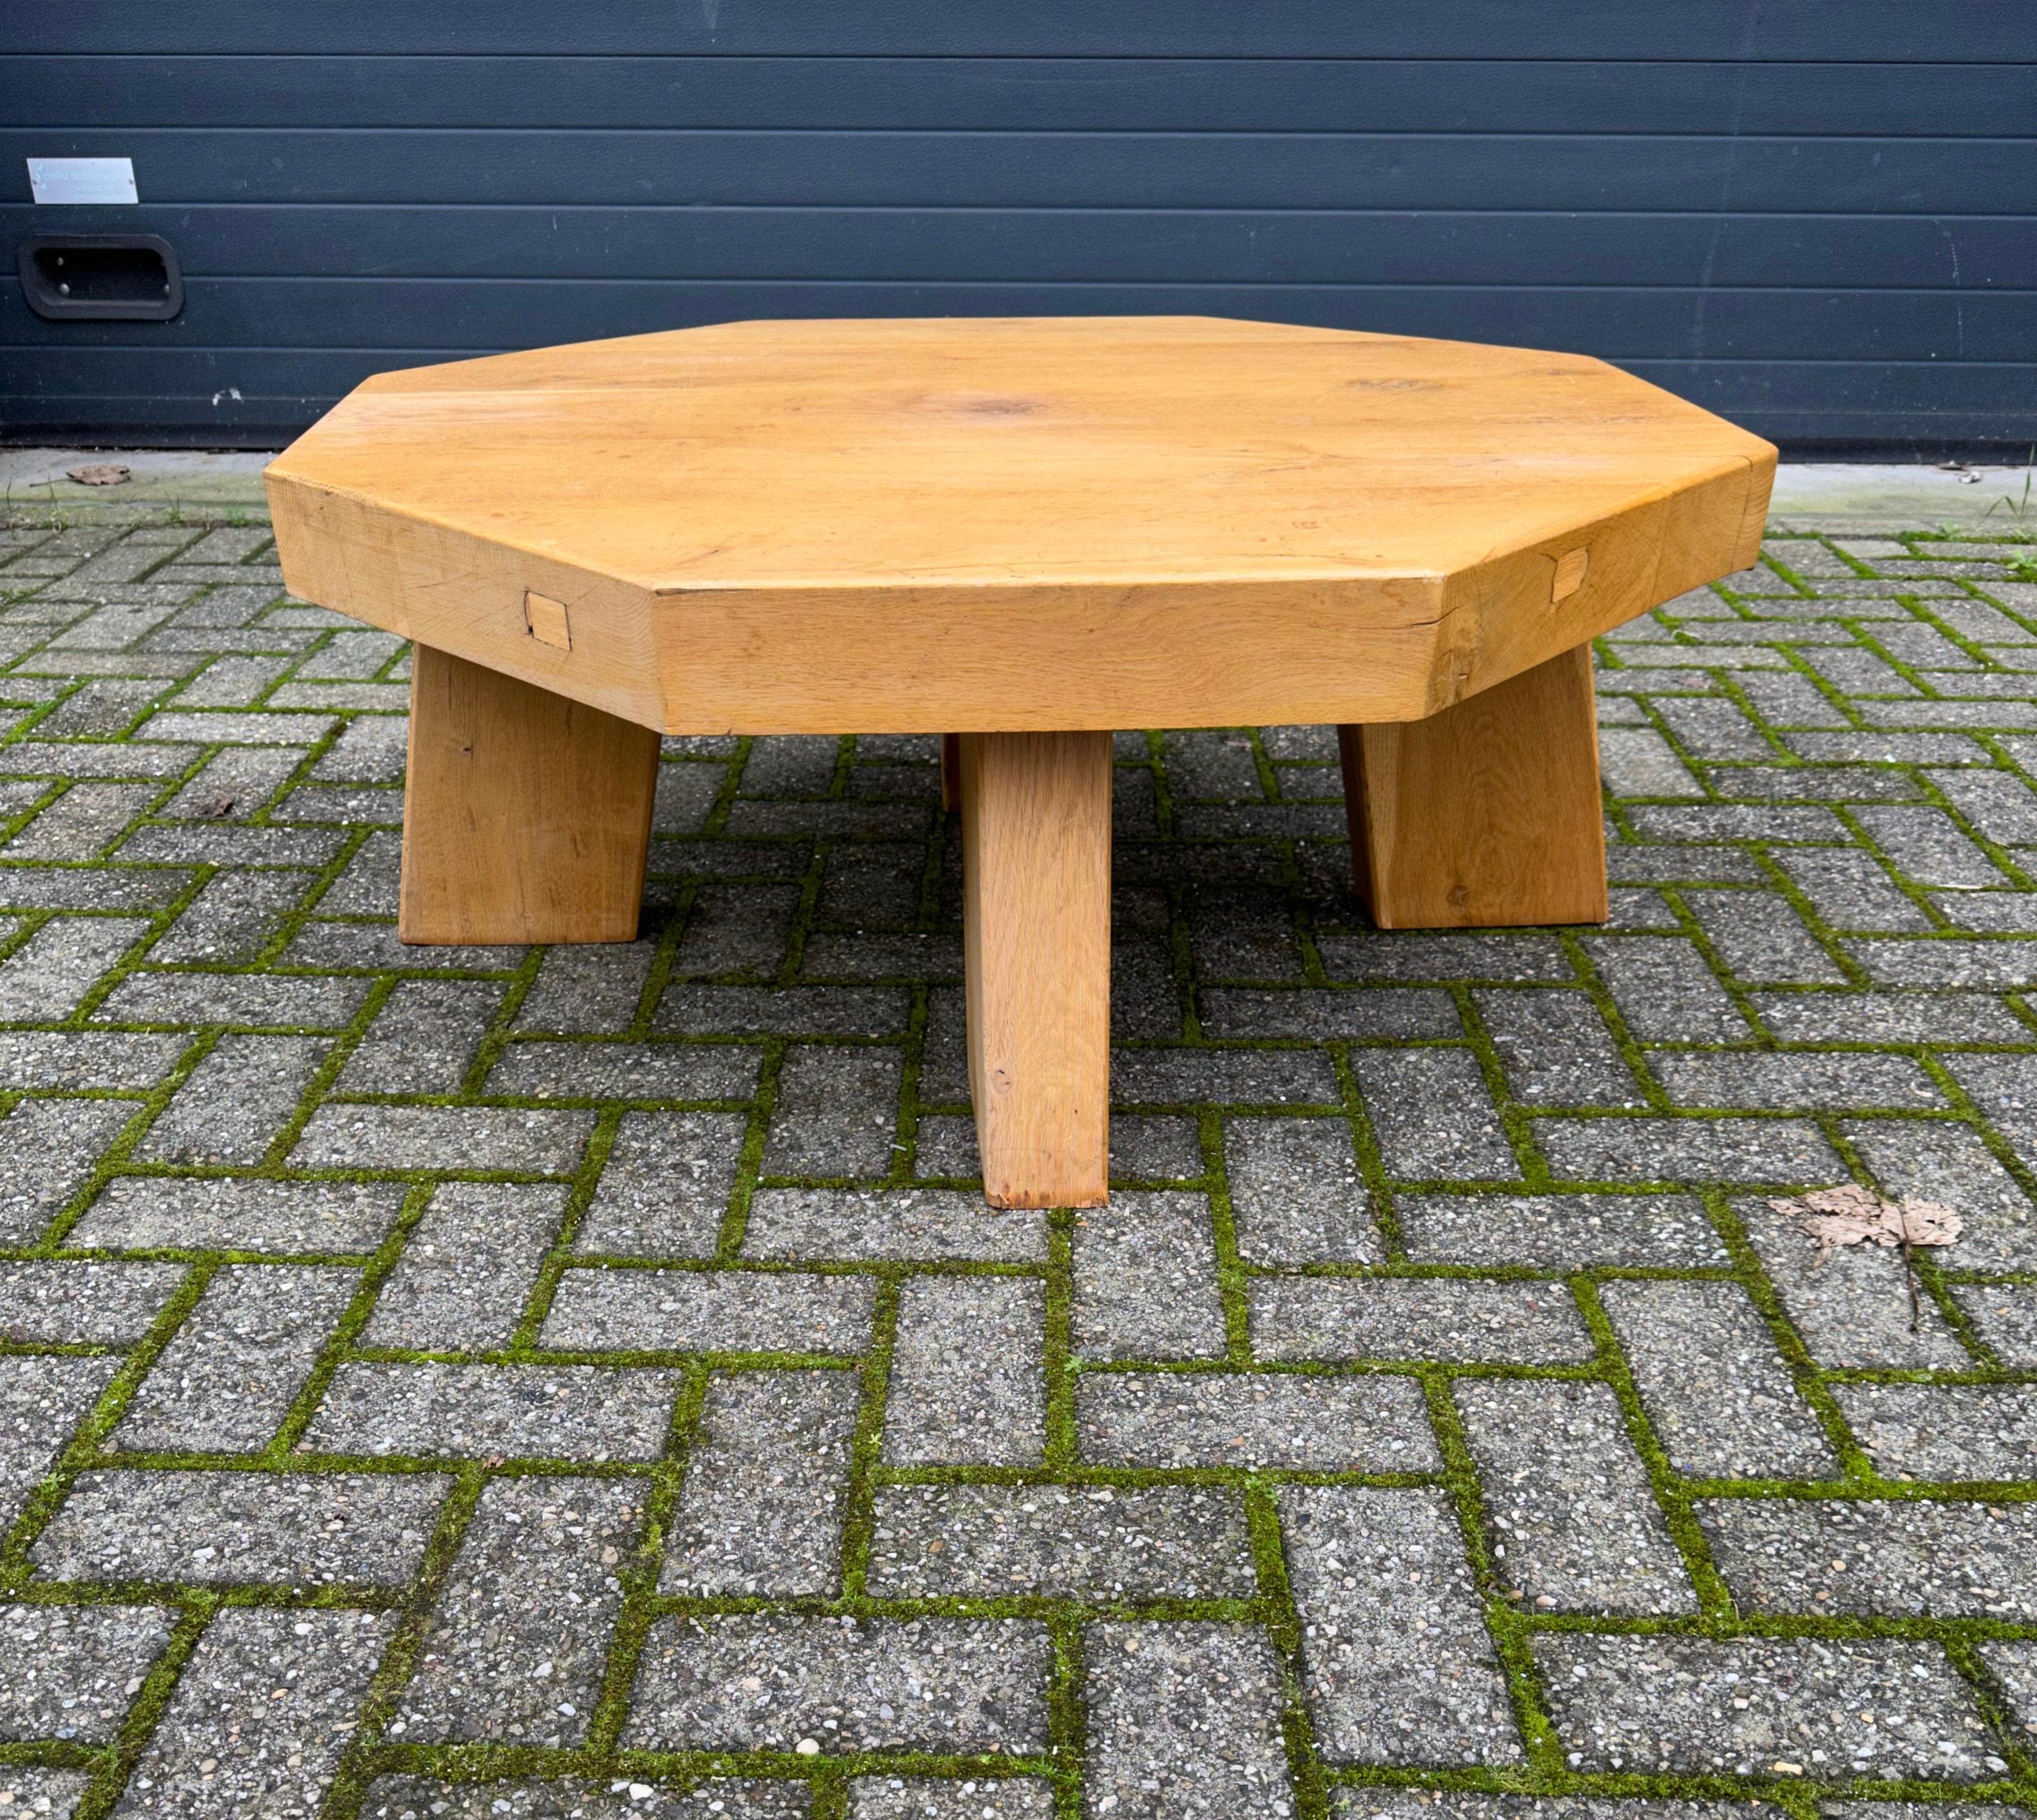 Brutalisme Grande table basse / canapé de style Midcentury, 1960-1970, en chêne massif massif, de taille mammouth en vente